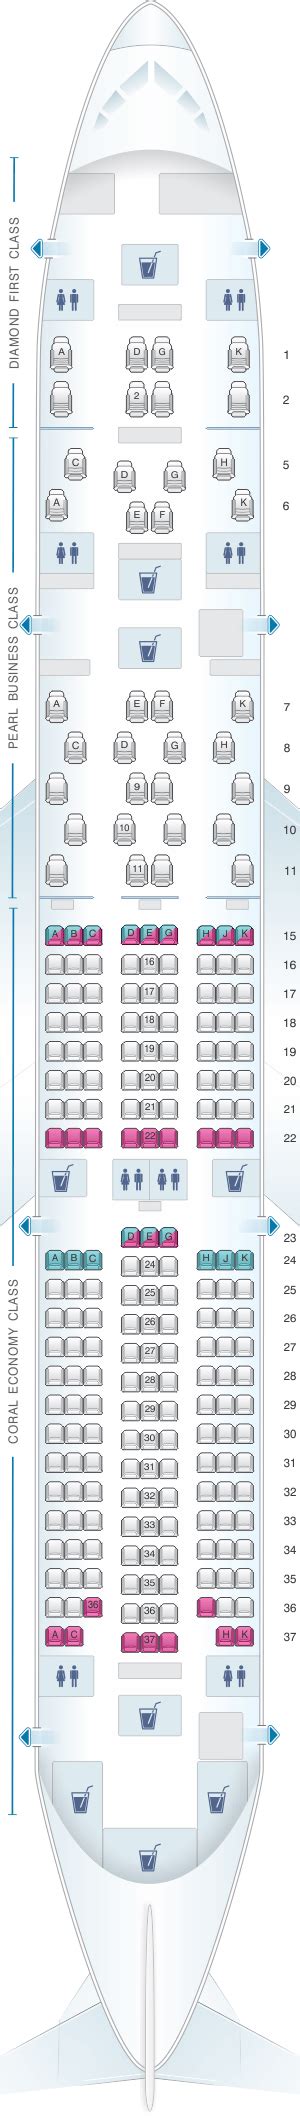 Boeing 787 9 Dreamliner Etihad Seating Plan Elcho Table